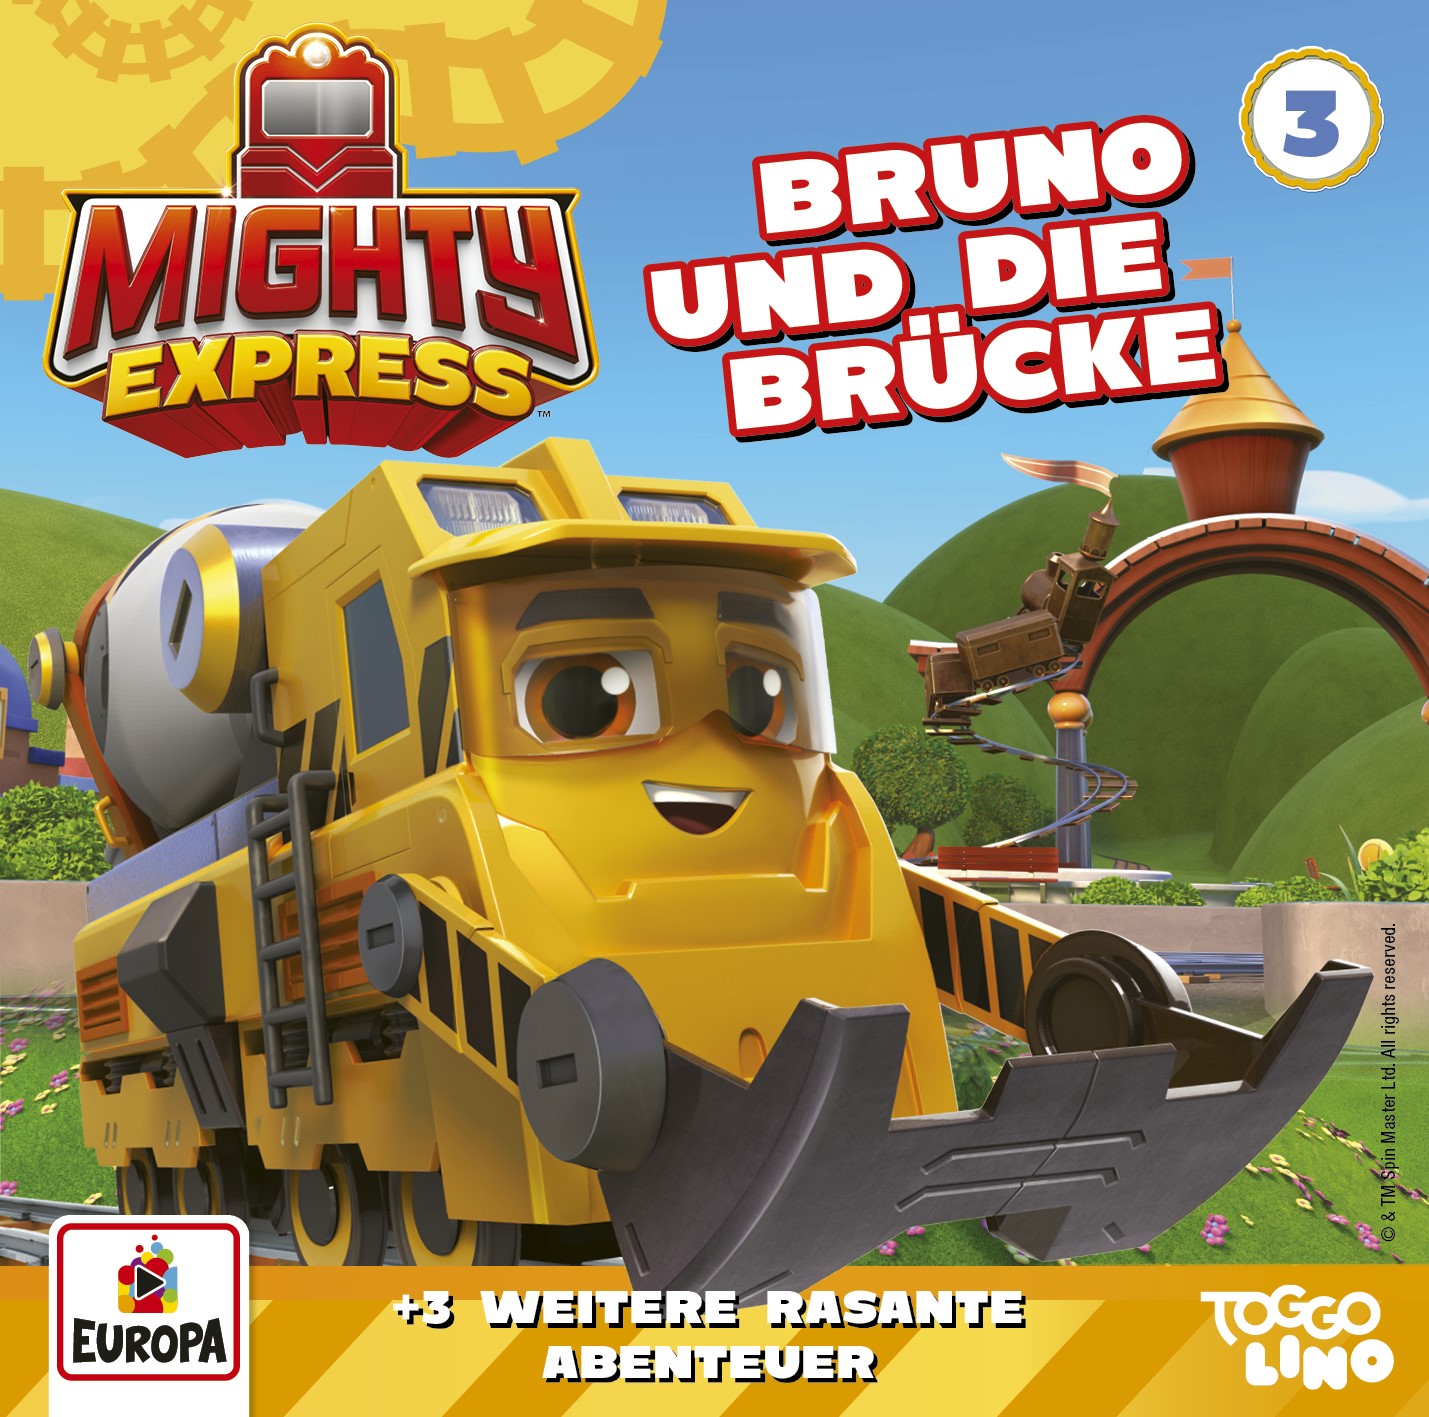 Mighty Express: Bruno und die Brücke